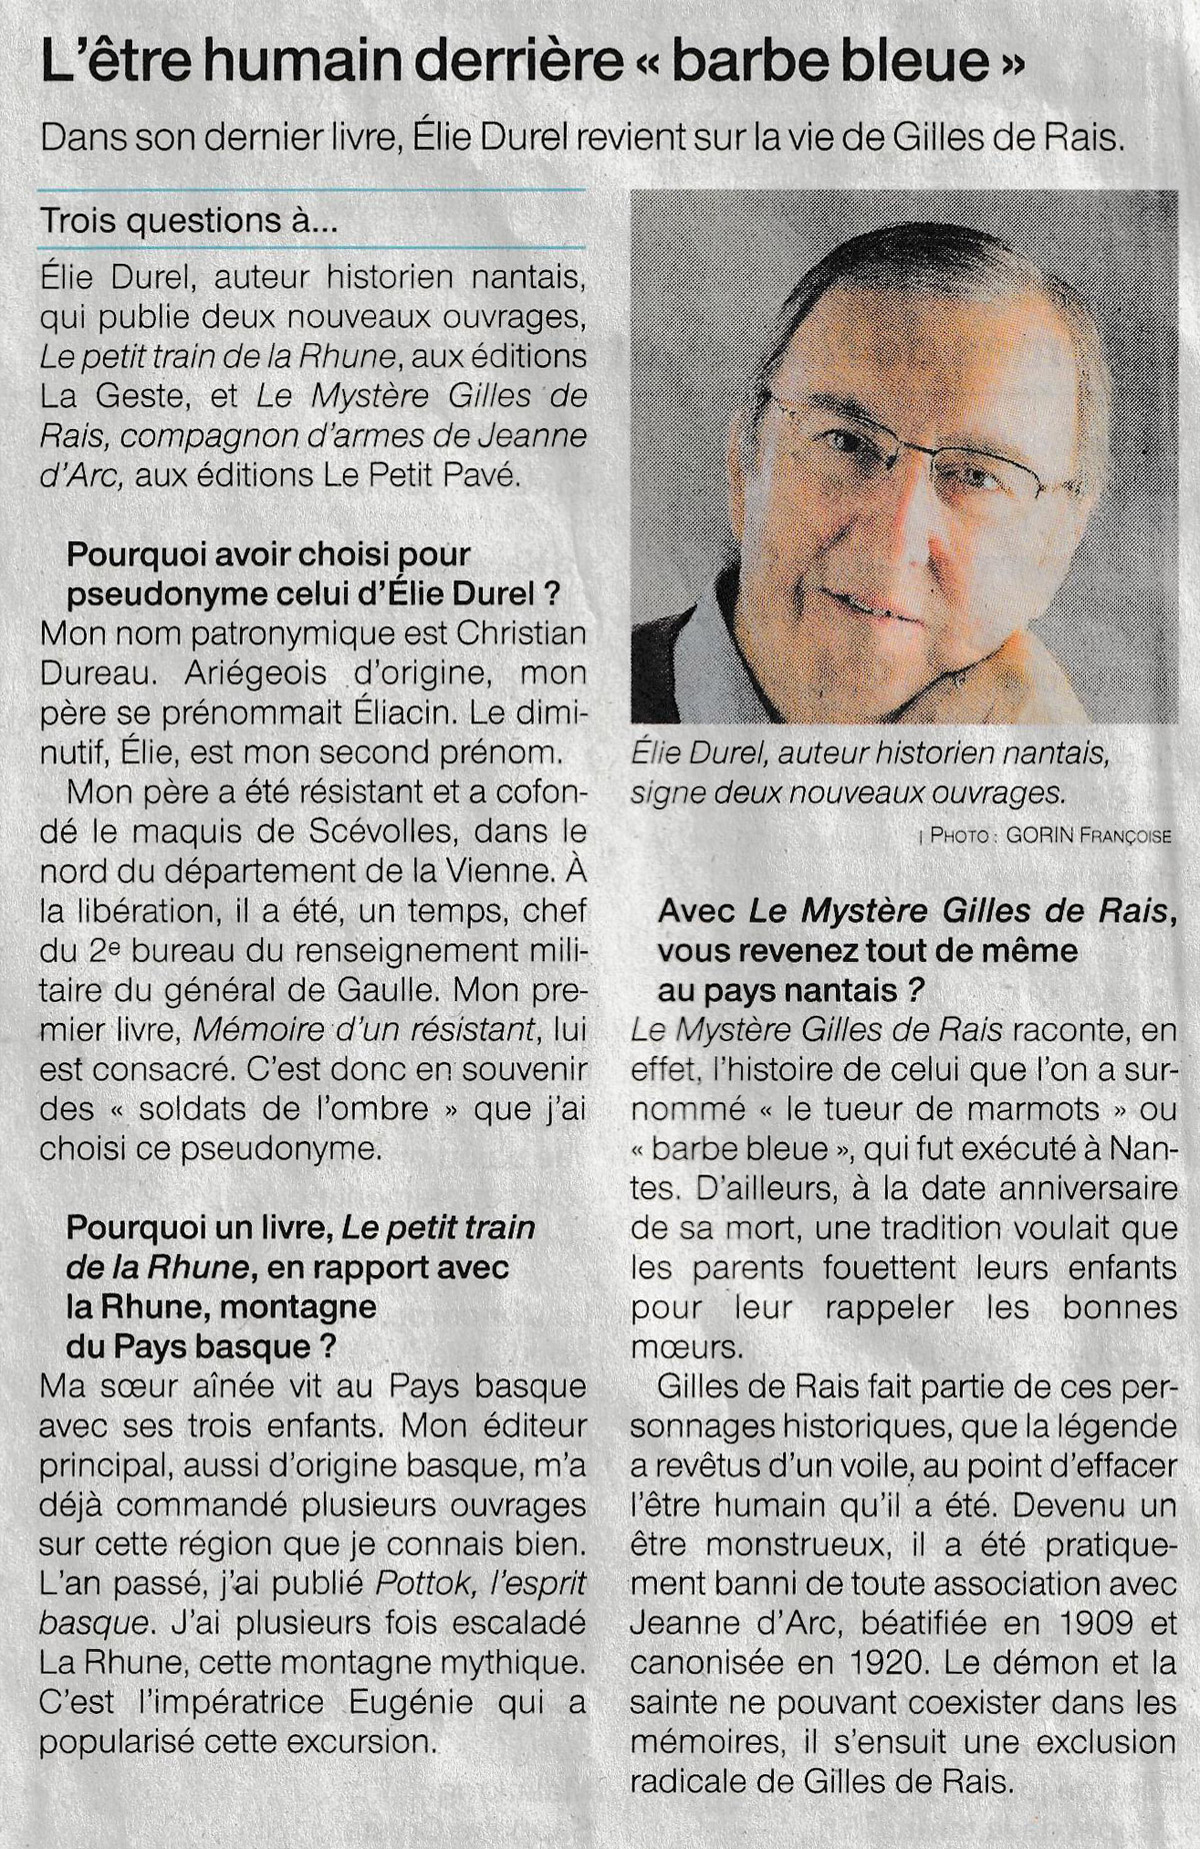 Elie Durel revient sur la vie de Gilles de Rais - Photo revue_de_presse-le_mystere_de_gilles_de_rais-ouest-france-nantes_0.jpg